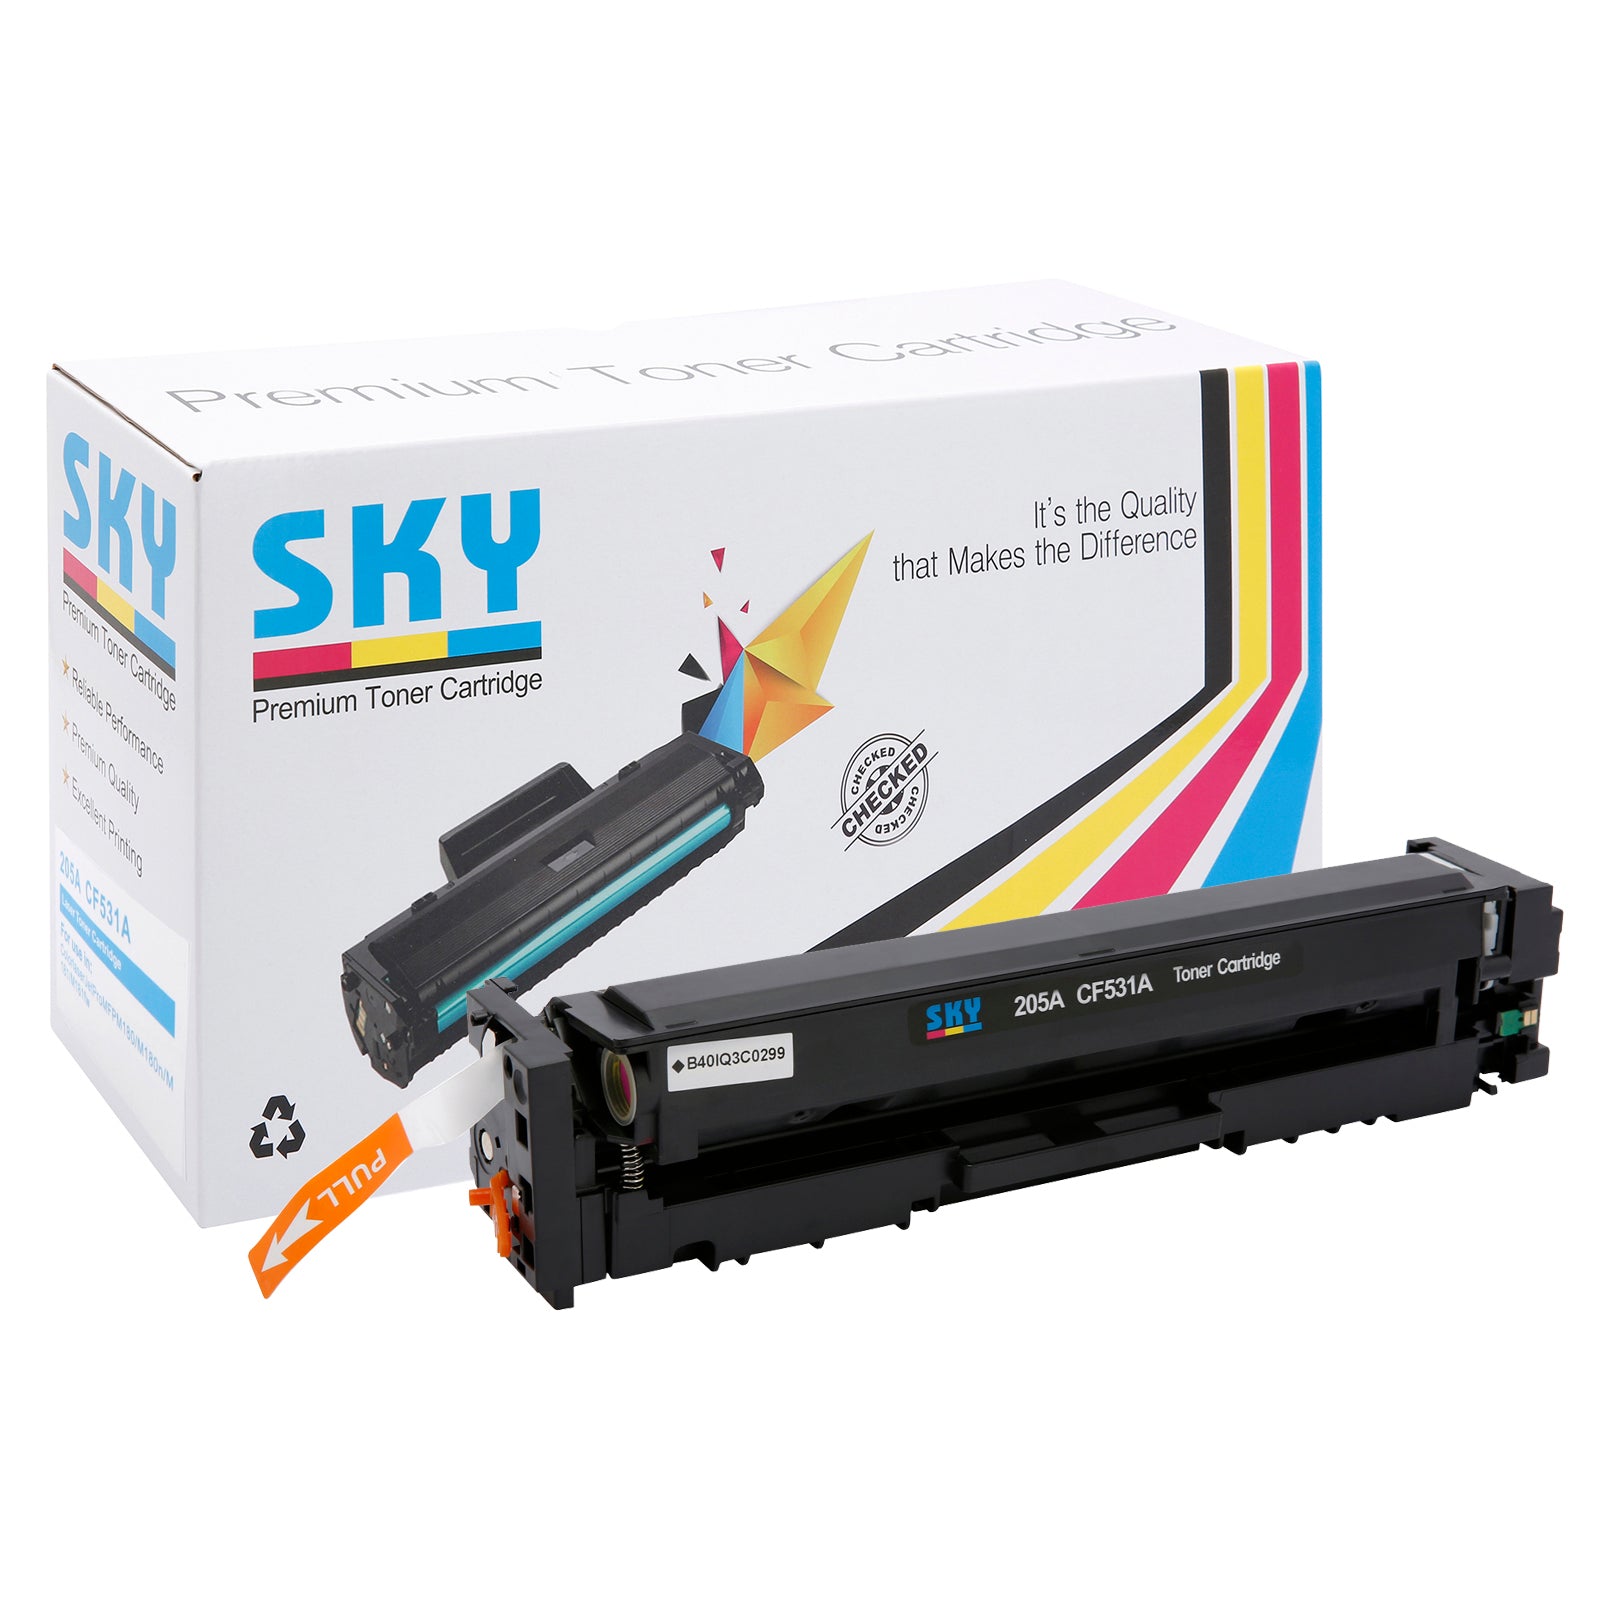 SKY 205A Compatible Toner Cartridges for HP Colour LaserJet Pro M180, M181 and M154